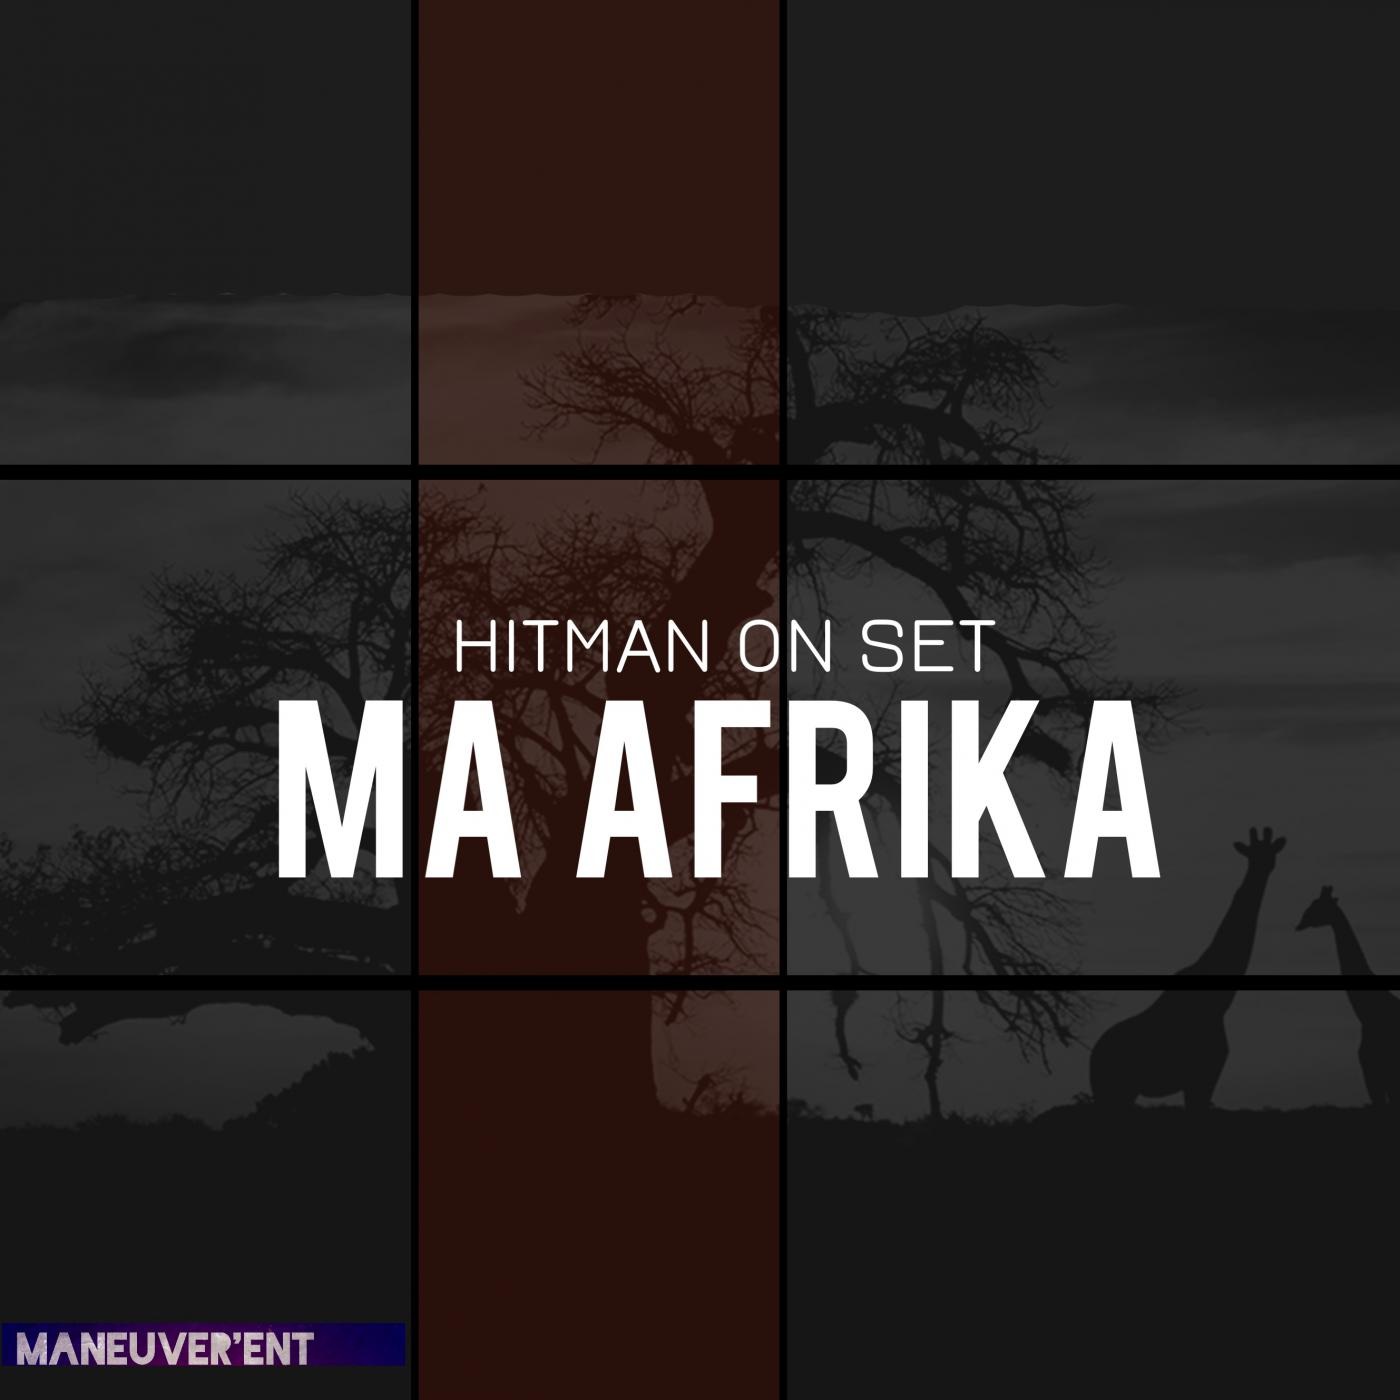 Hitman On Set - Ma Afrika / Maneuverent